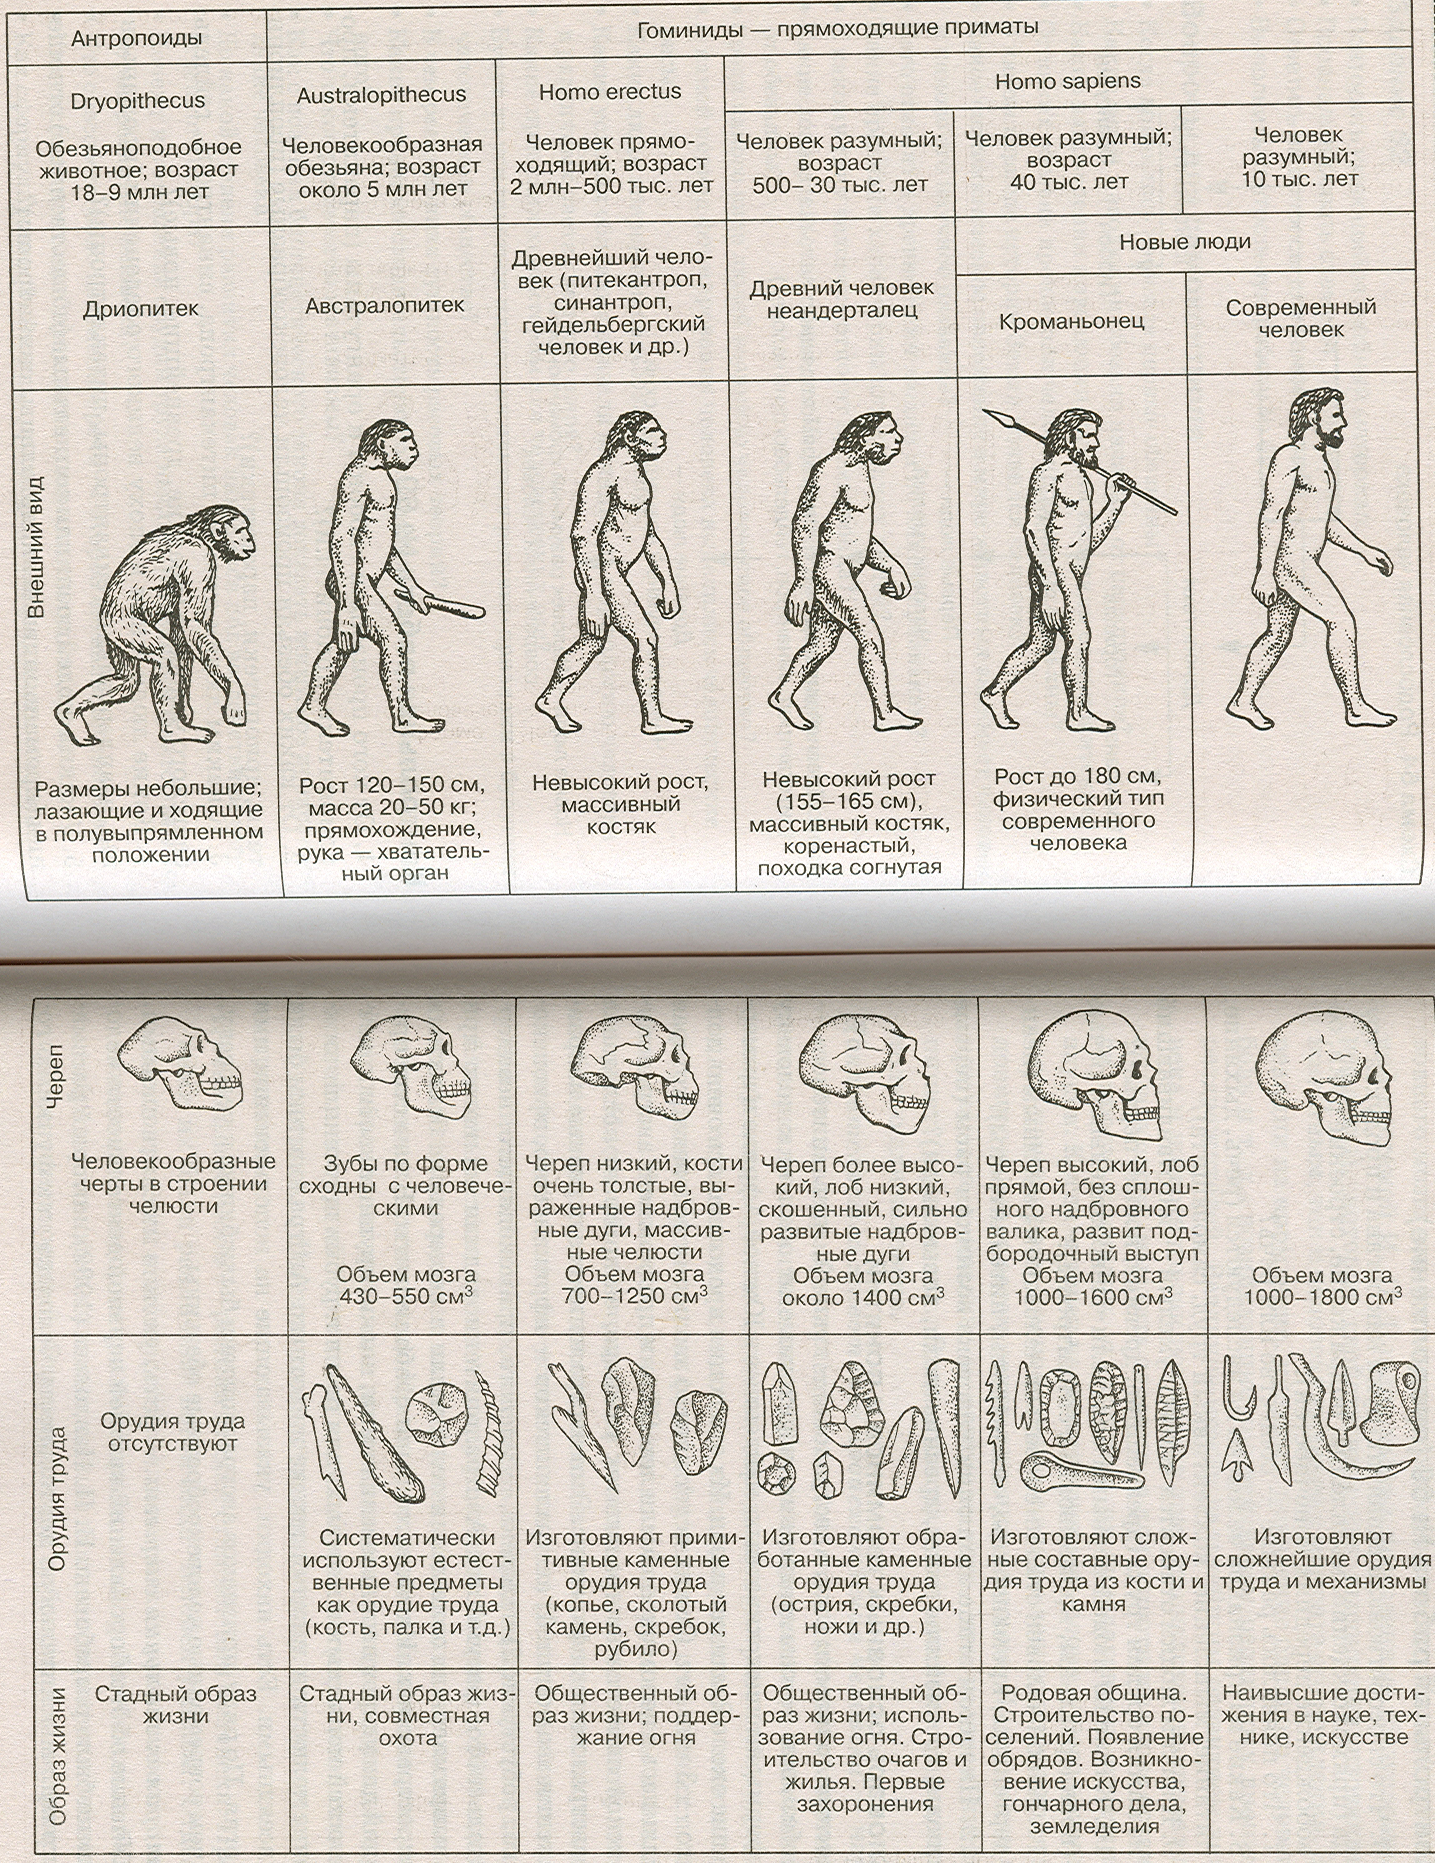 Антропогенез человека 9 класс. Этапы развития человека таблица этапы антропогенеза. Этапы эволюции человека таблица дриопитек. Основные стадии развития человека таблица. Стадия развития человека таблица по биологии.